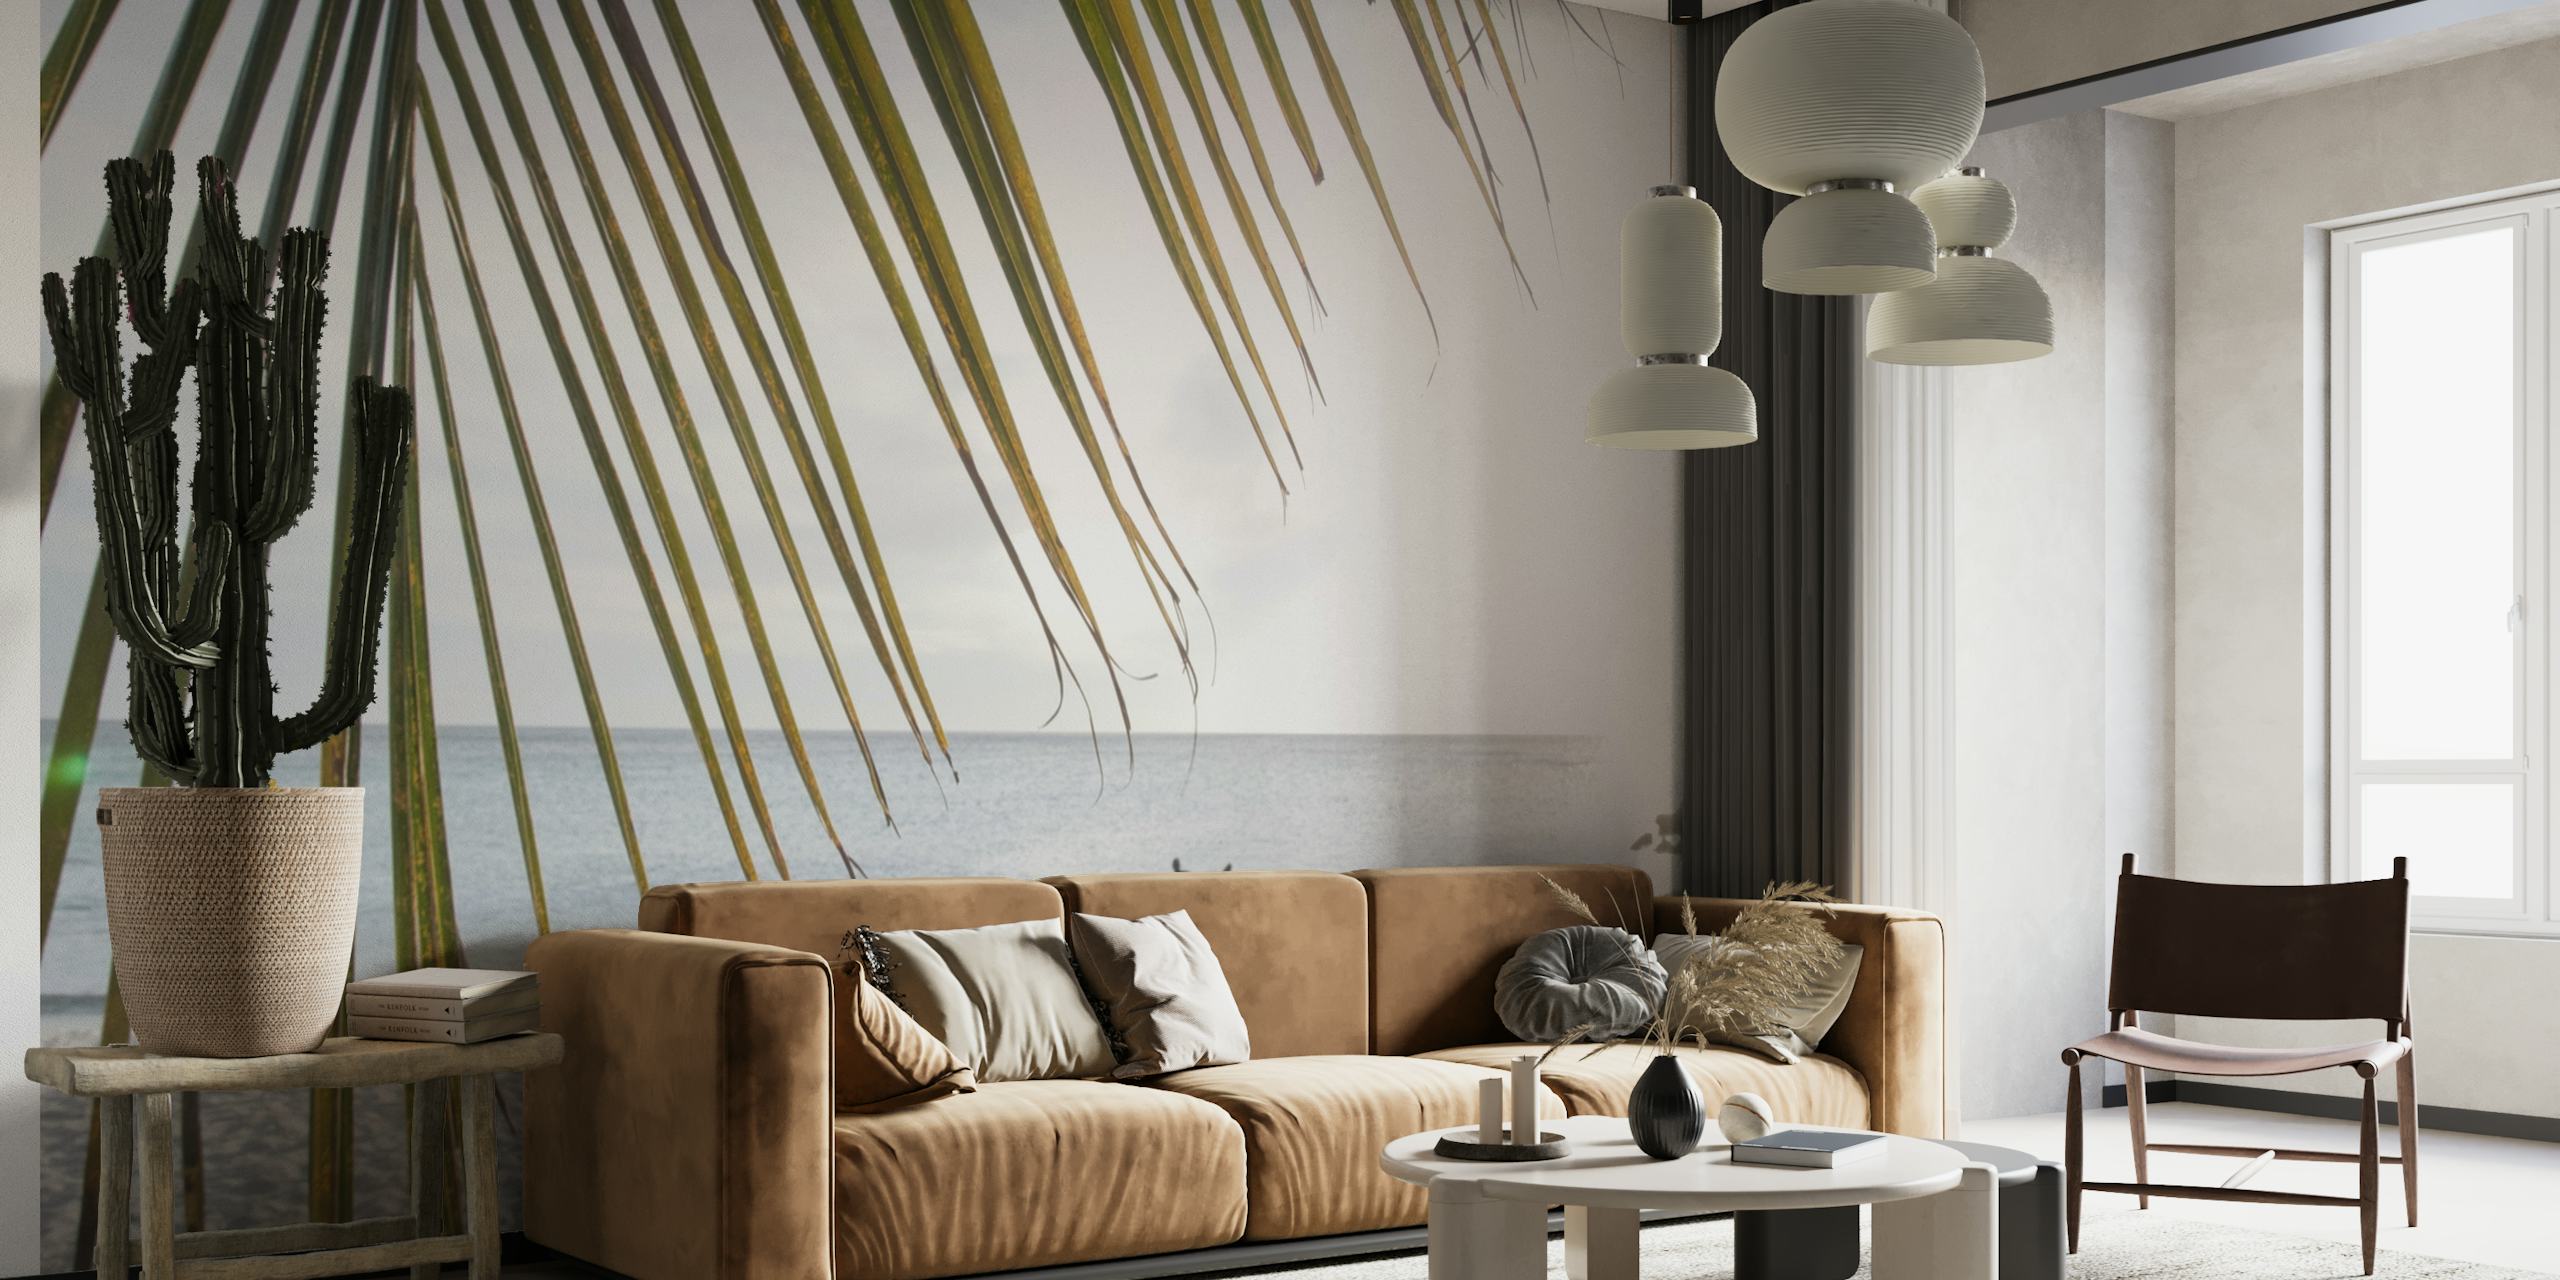 Sunset Ocean Palm Dream 1 wallpaper